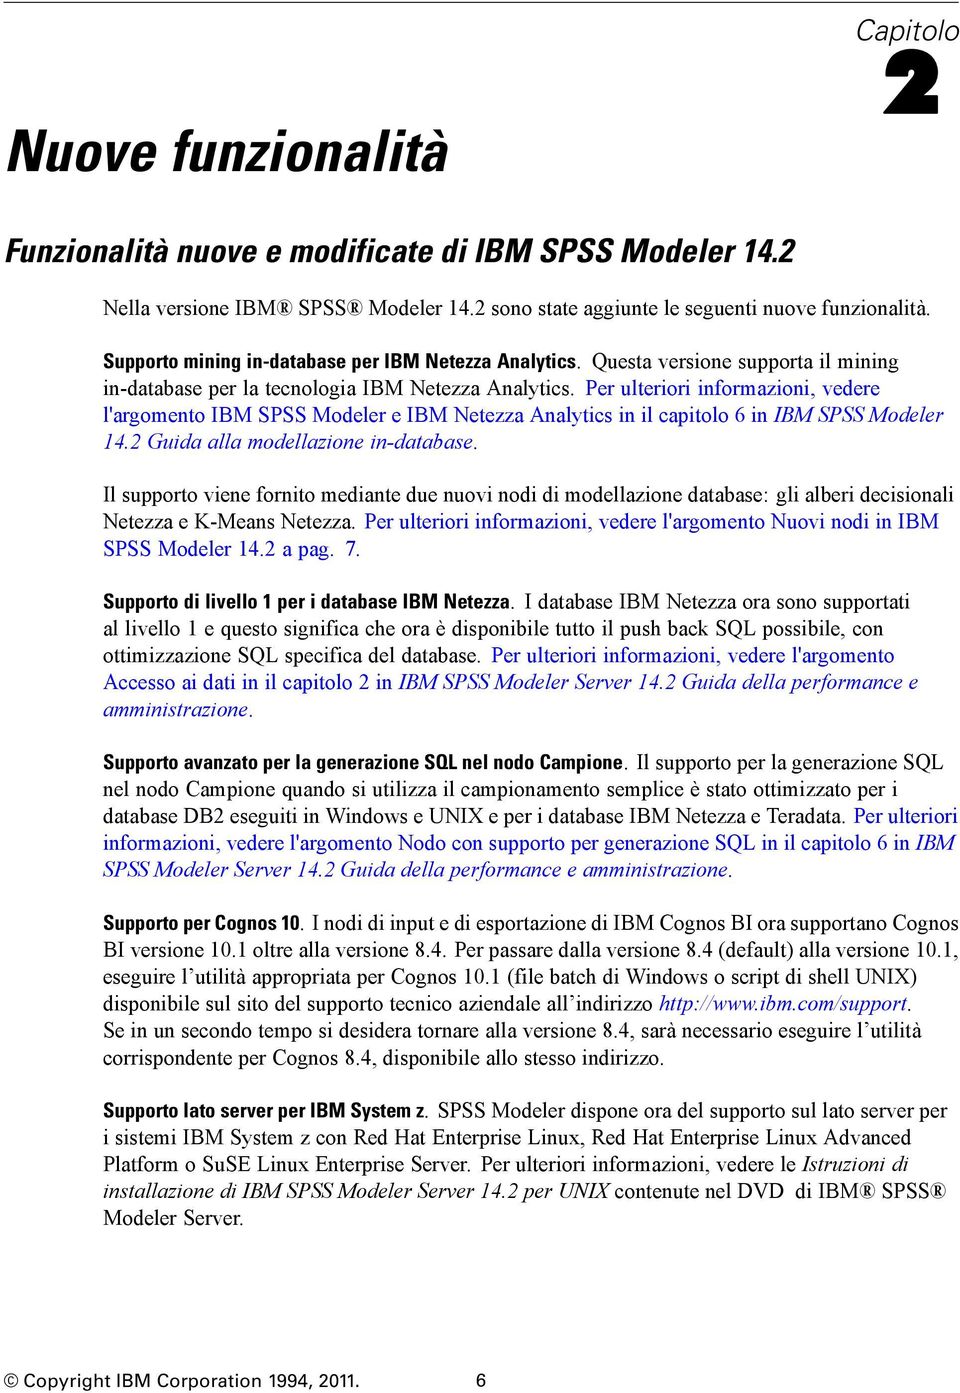 Per ulteriori informazioni, vedere l'argomento IBM SPSS Modeler e IBM Netezza Analytics in il capitolo 6 in IBM SPSS Modeler 14.2 Guida alla modellazione in-database.